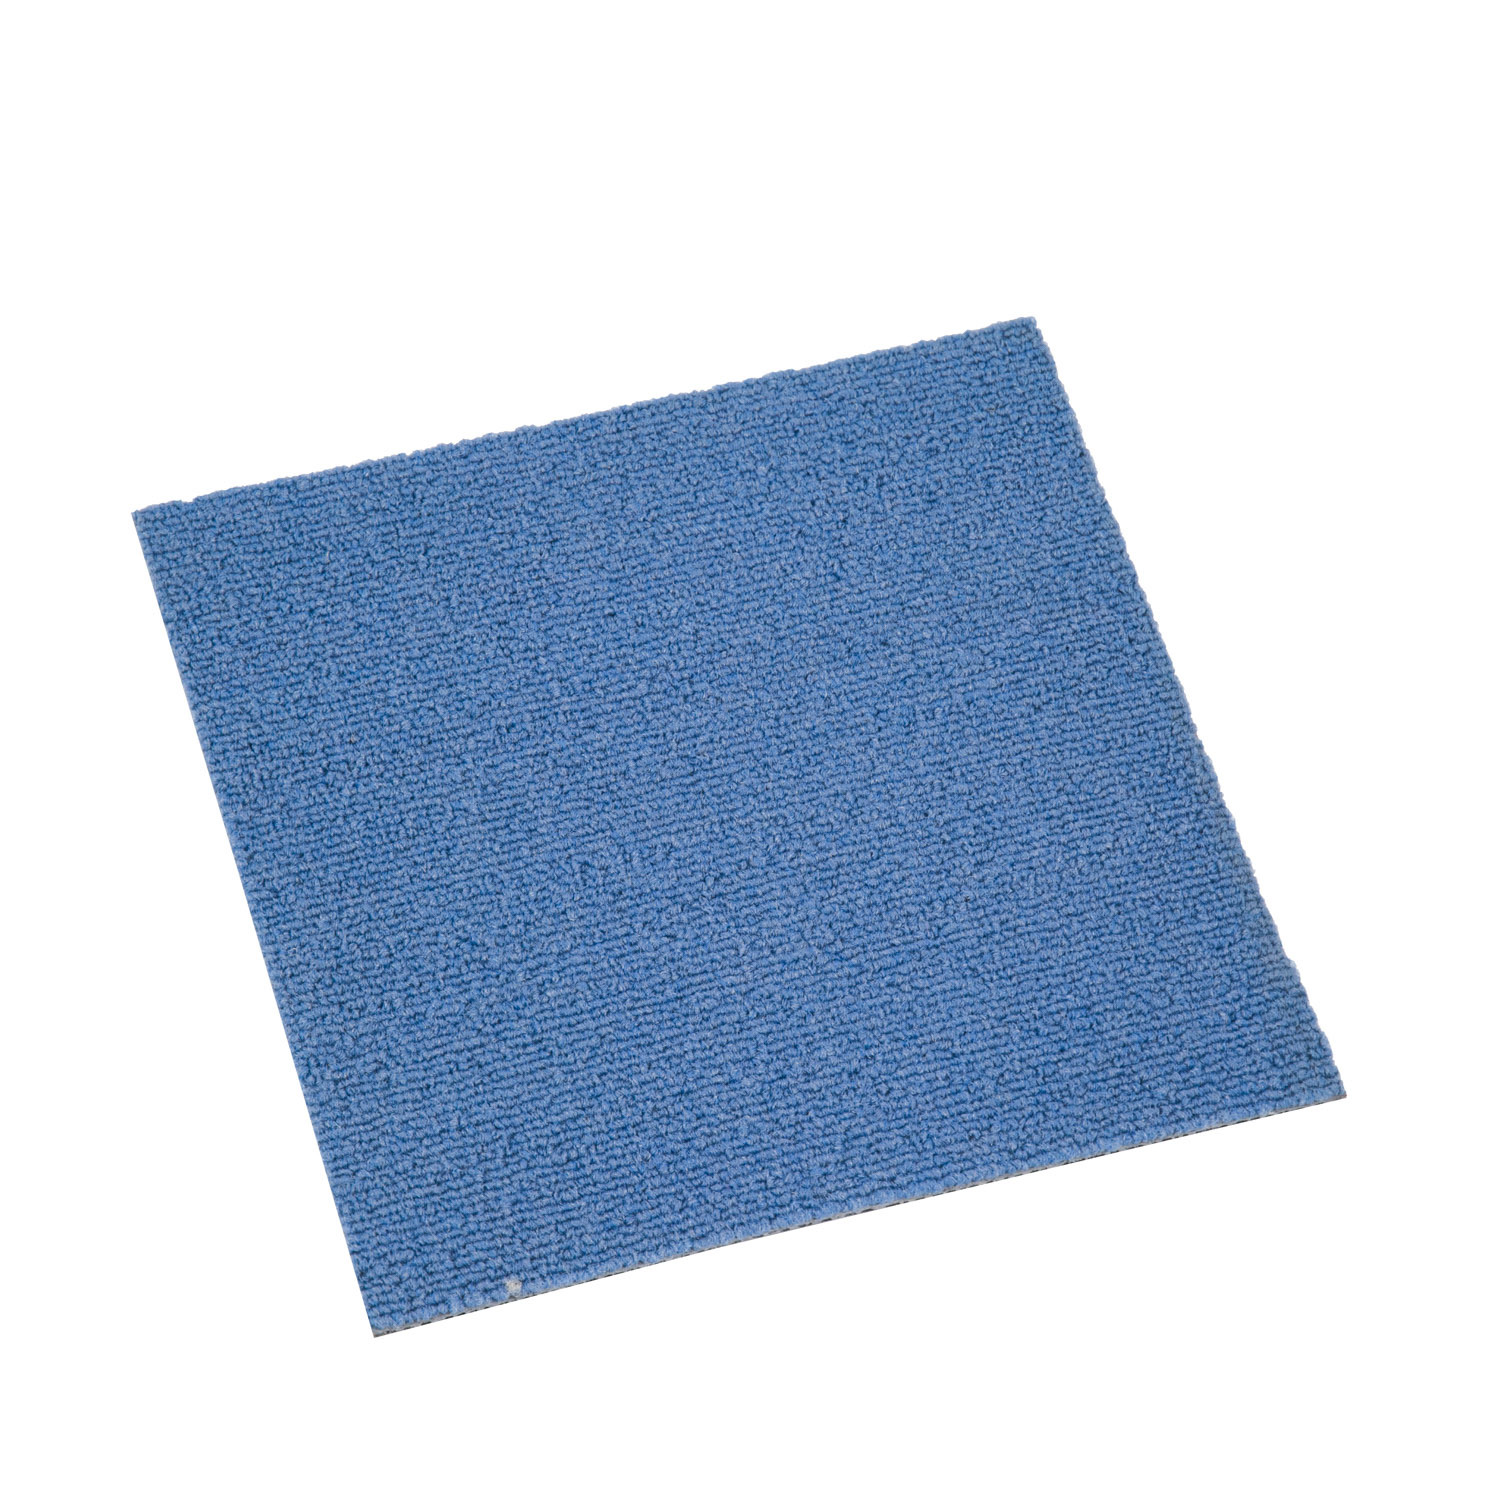 Azulejos de alfombra blanca impermeable para el hogar